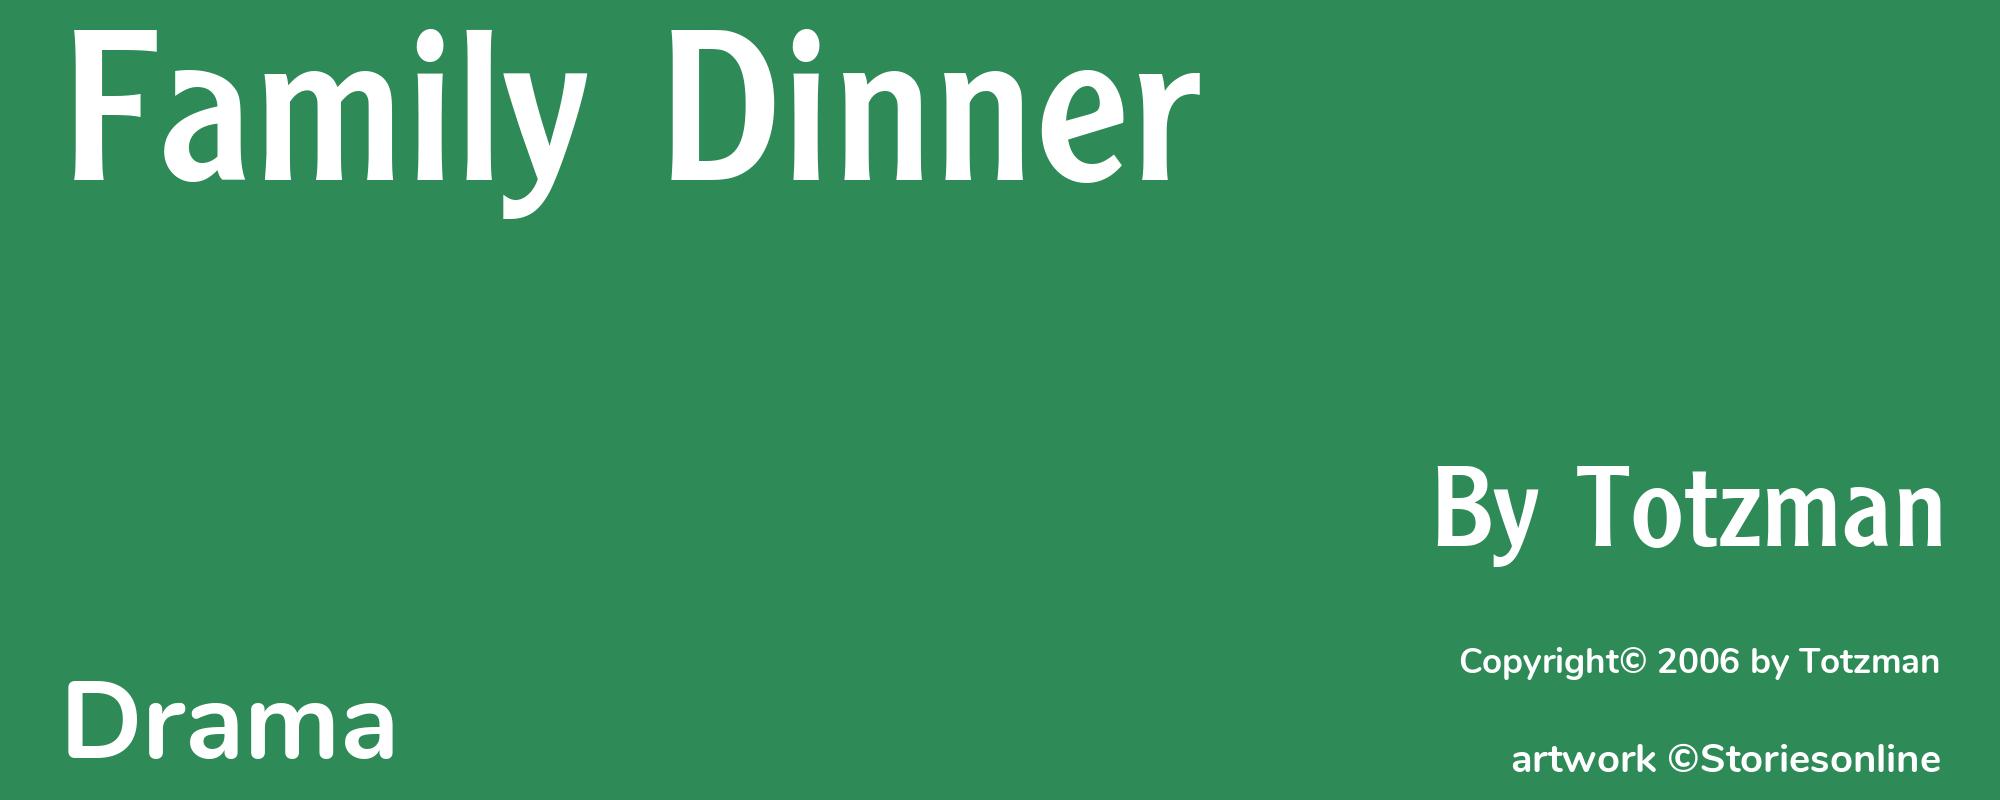 Family Dinner - Cover